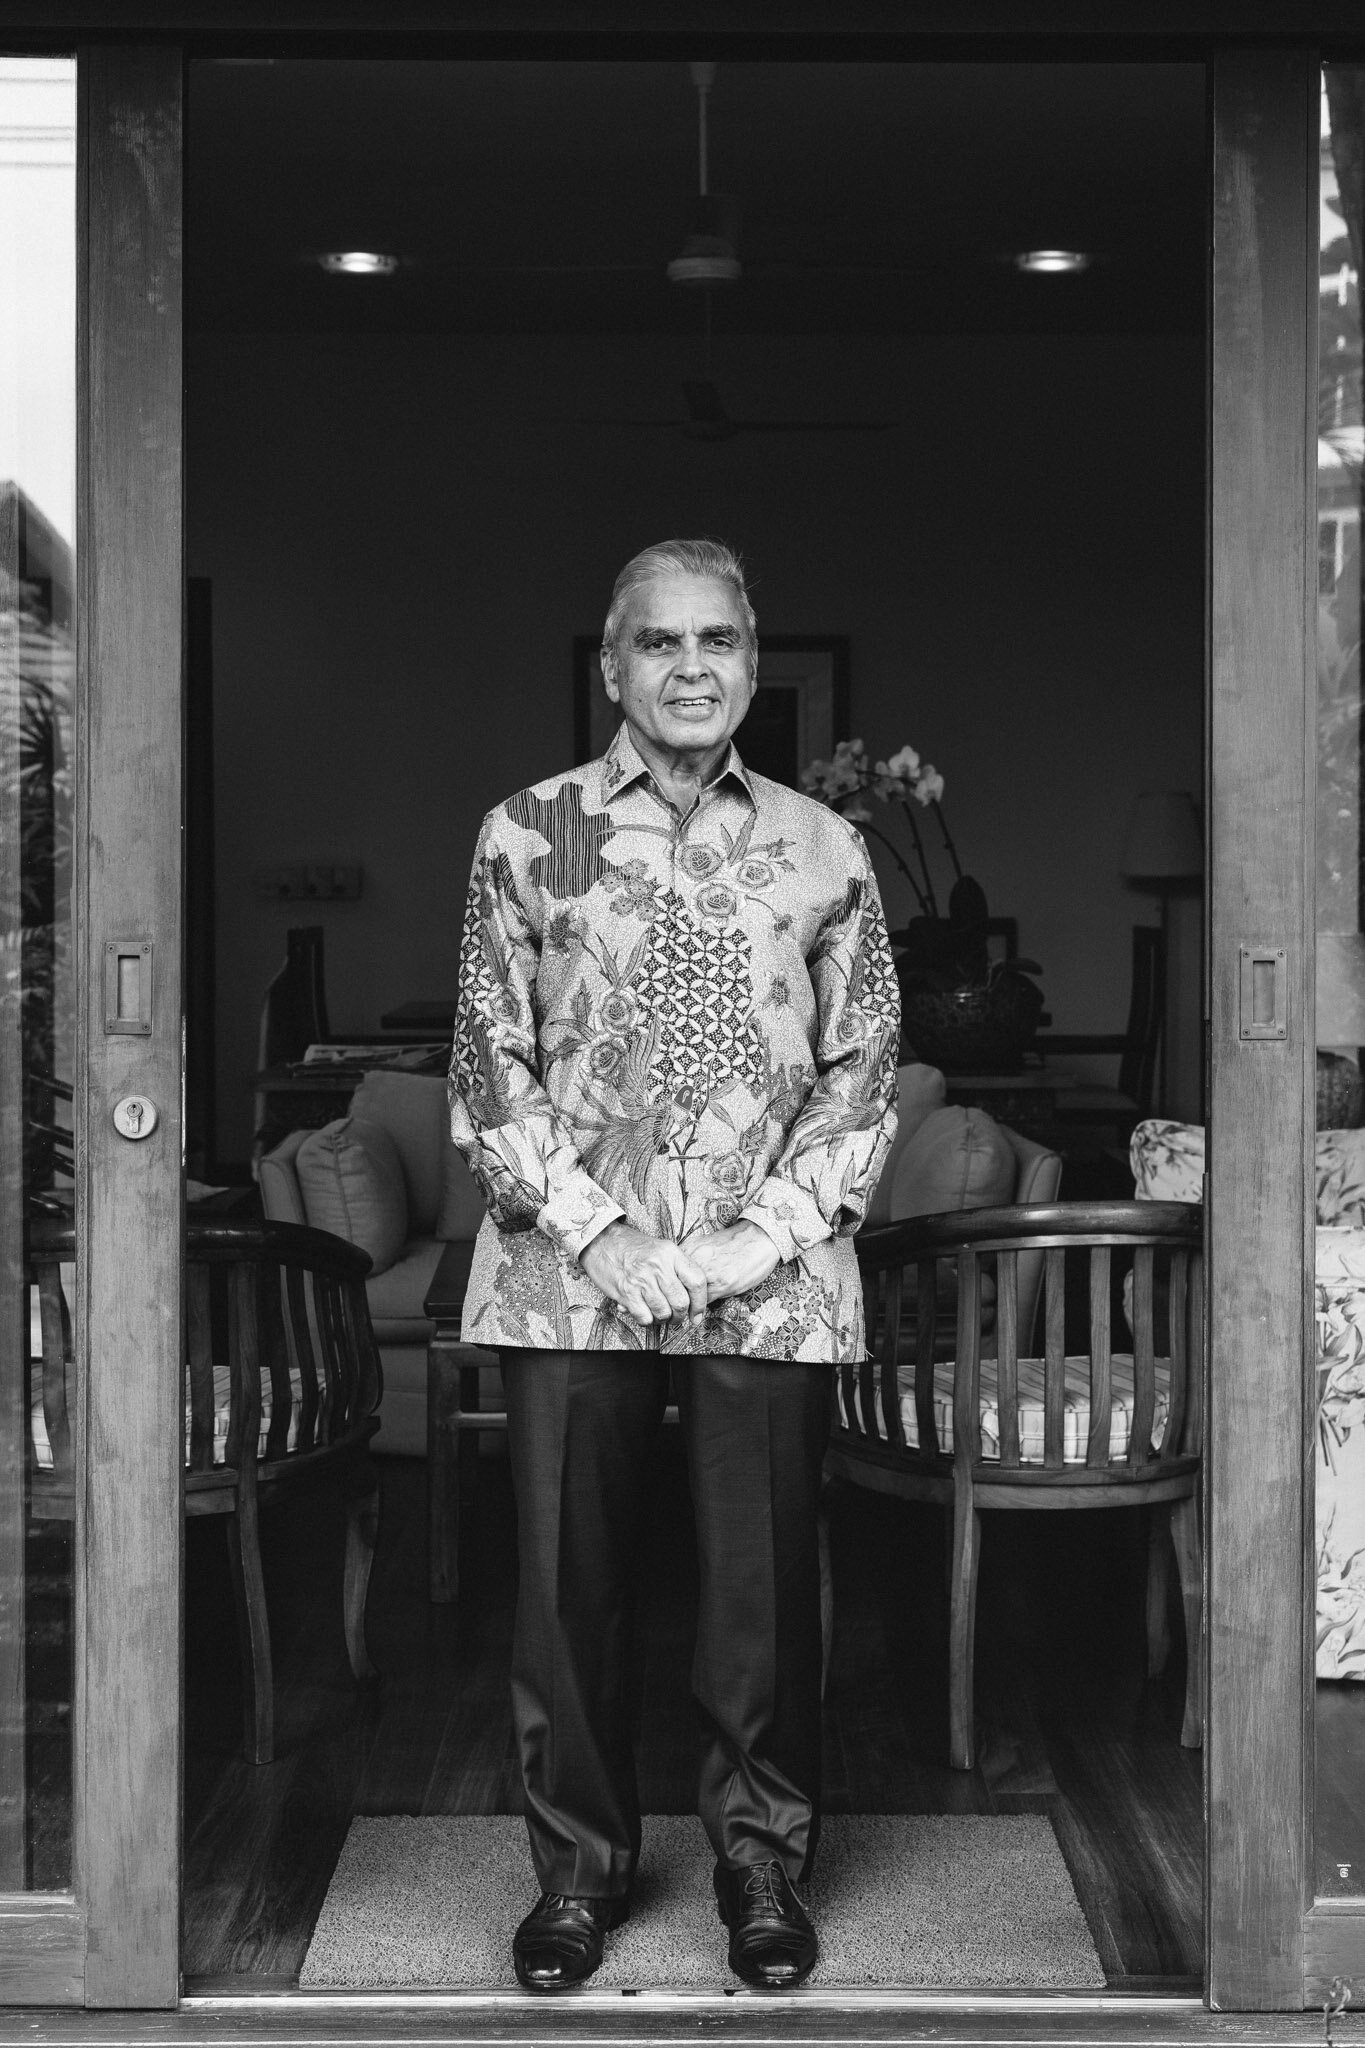 Portrait Photographer Singapore - Kishore Mahbubani